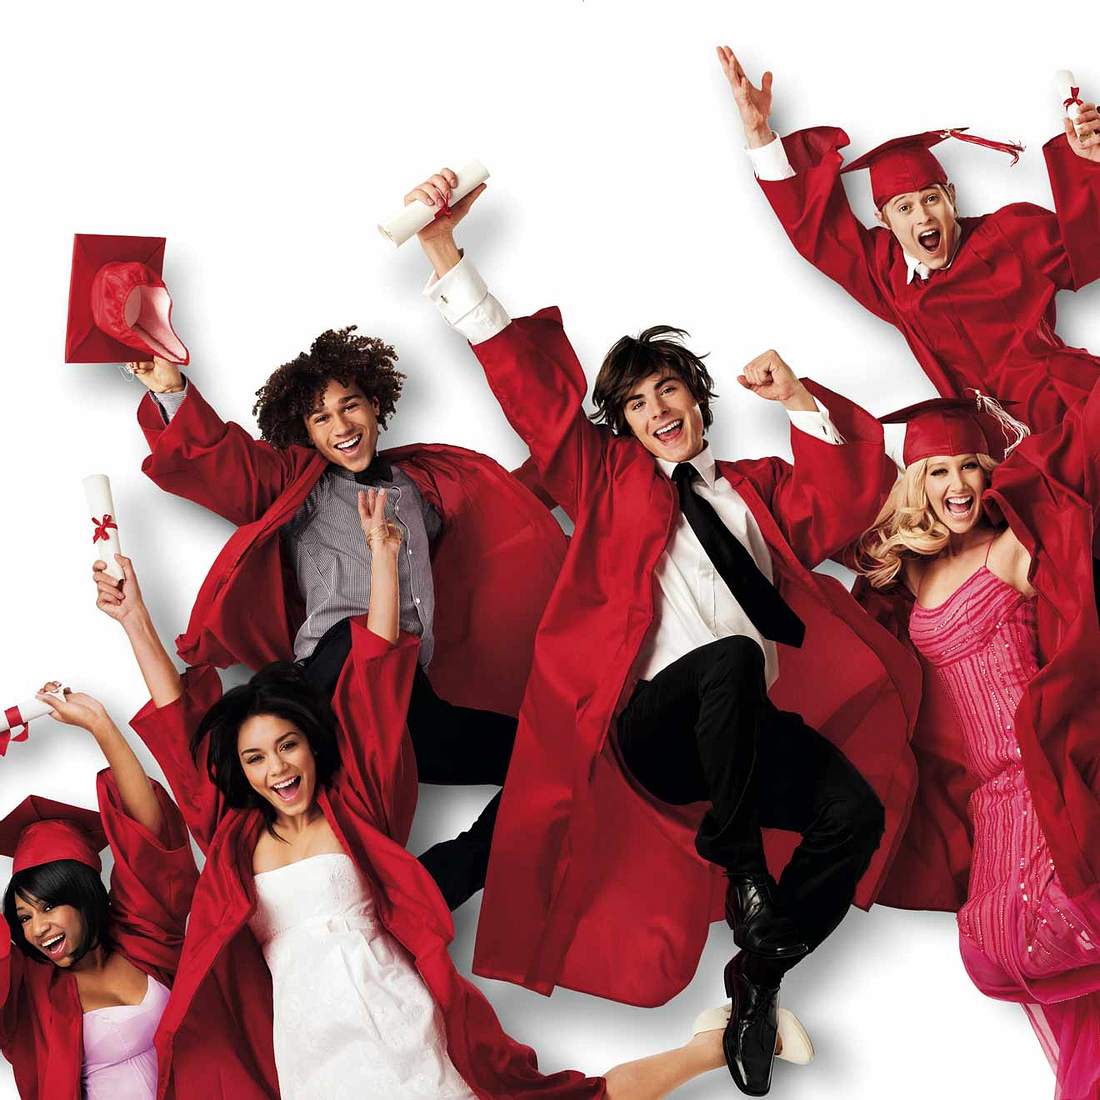 Die High School Musical-Triologie, waren die mit beliebtesten Disney-Filme der 2000er und sahnten unzählige Preise ab. Umso mehr hatten sich die Fans auf eine Reunion ihrer Stars gefreut. Doch Zac Efron fehlte…